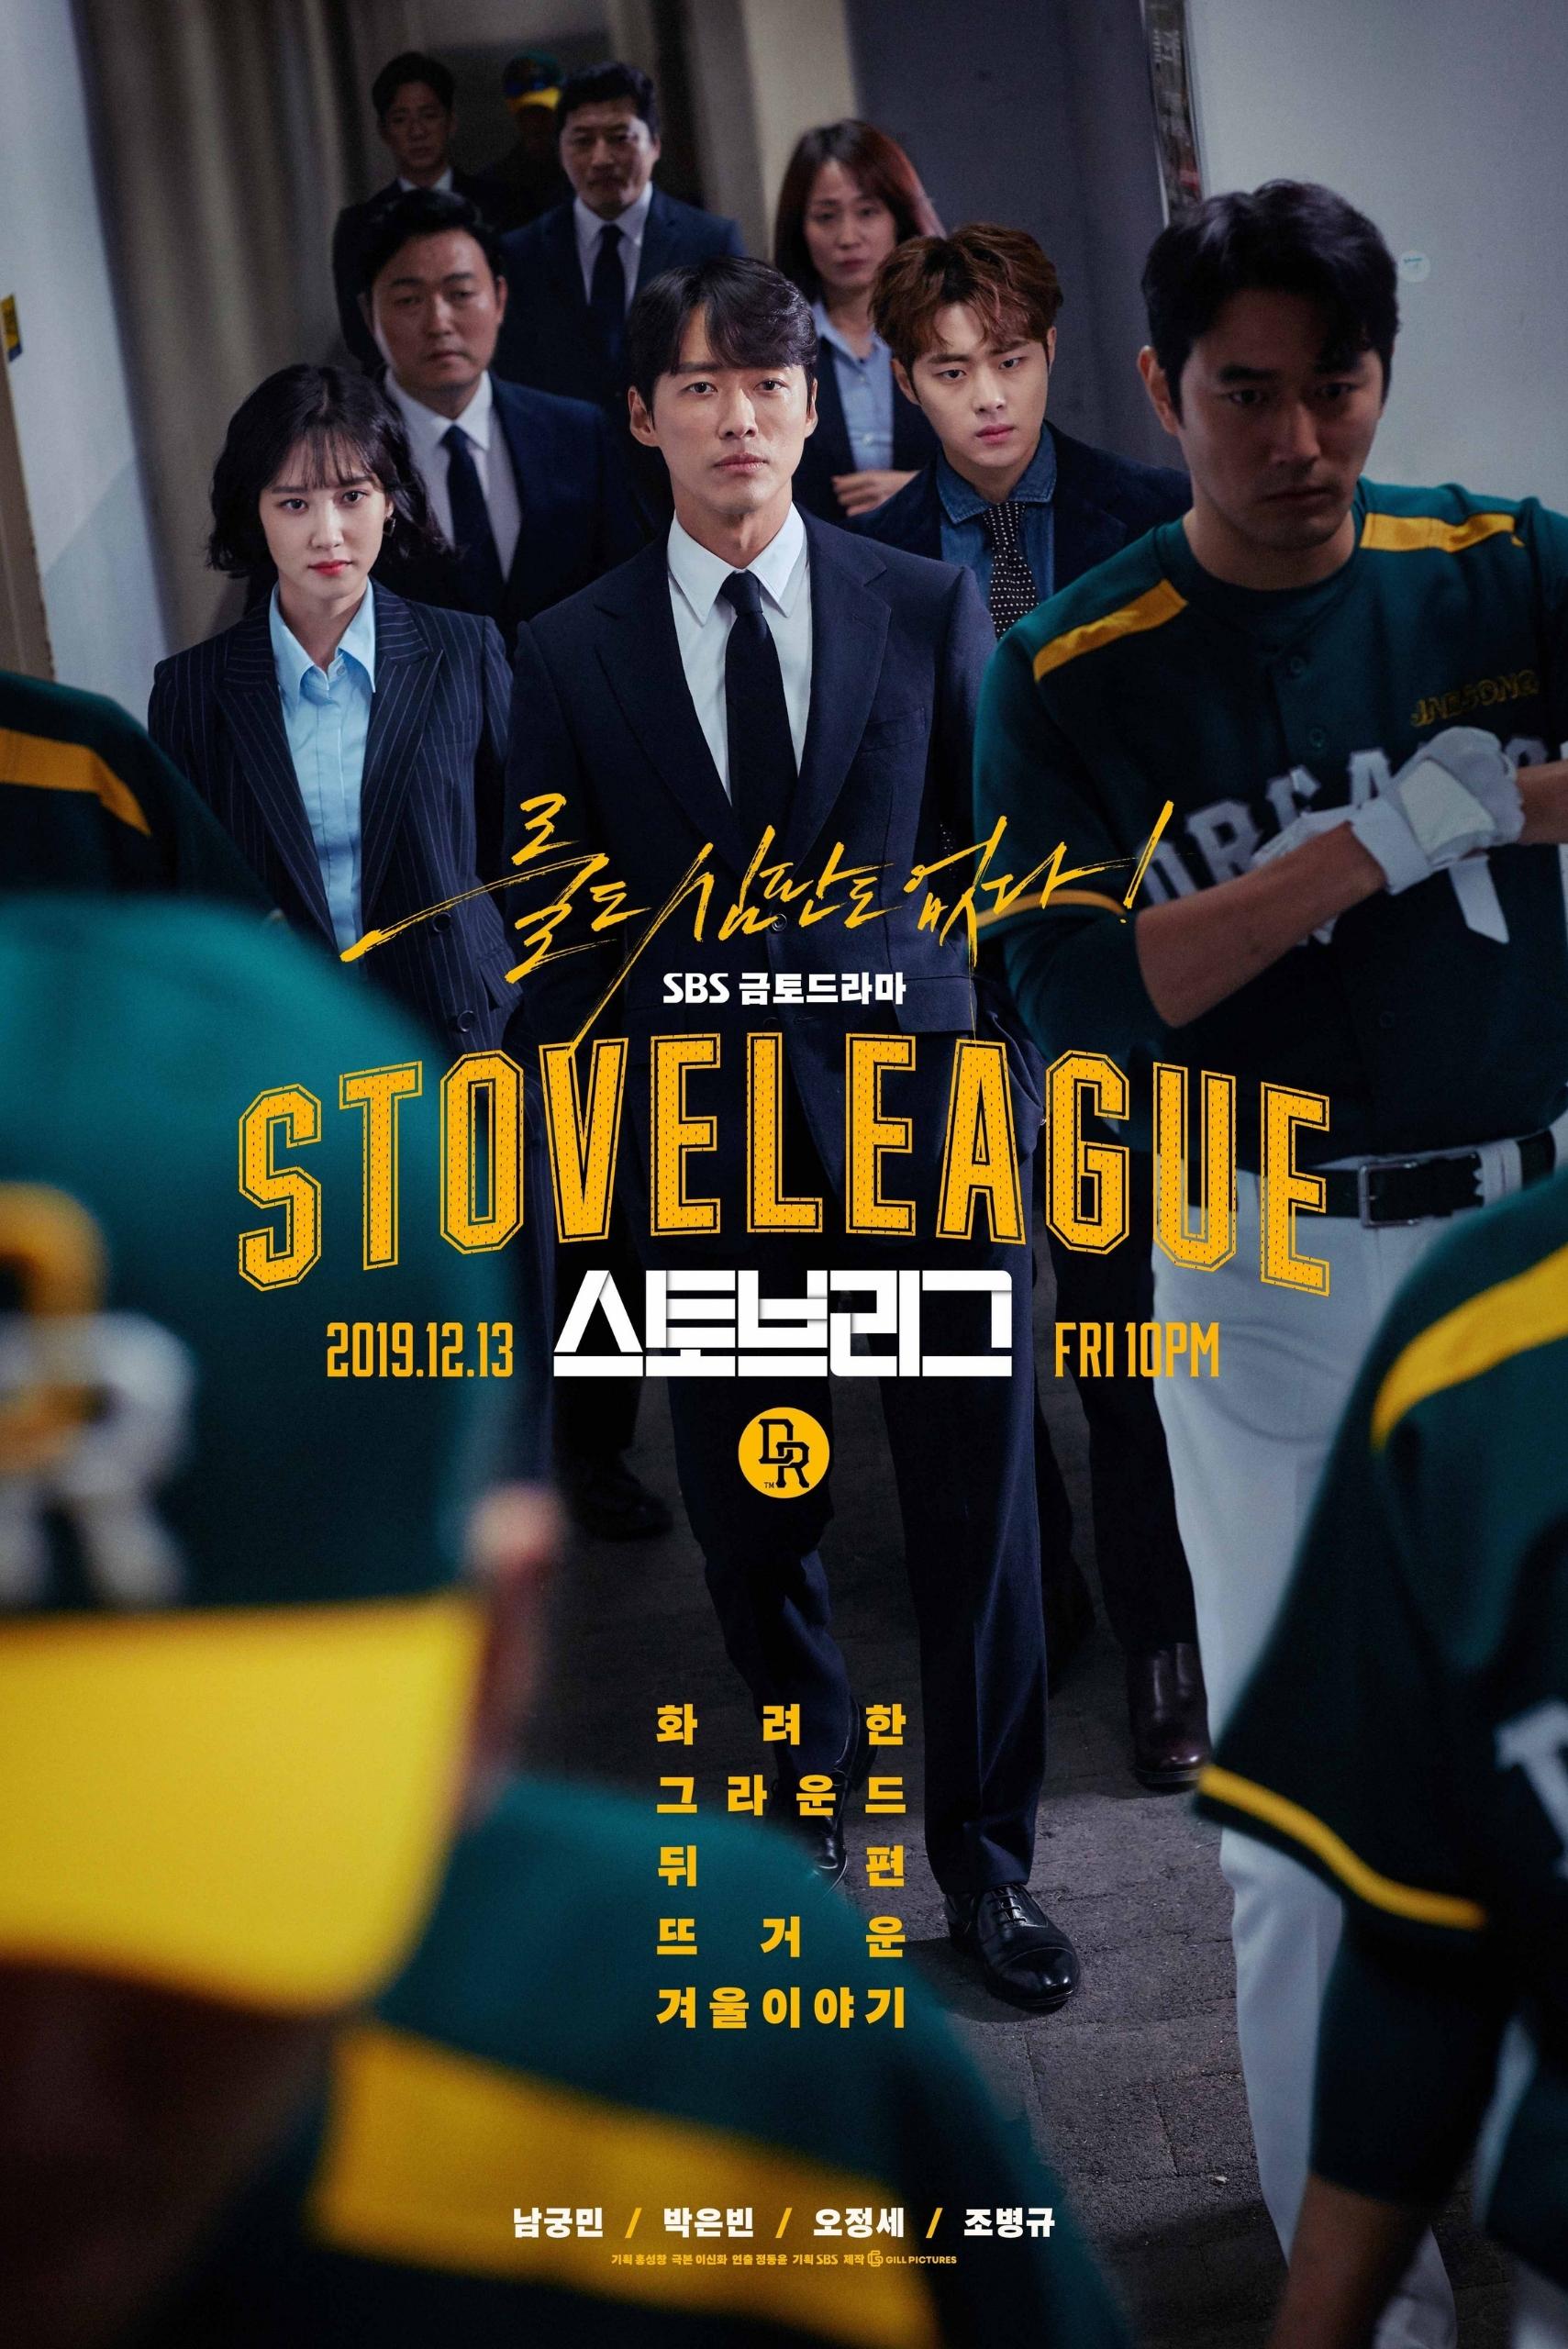 phim Hot Stove League do Park Eun Bin đóng vai chính